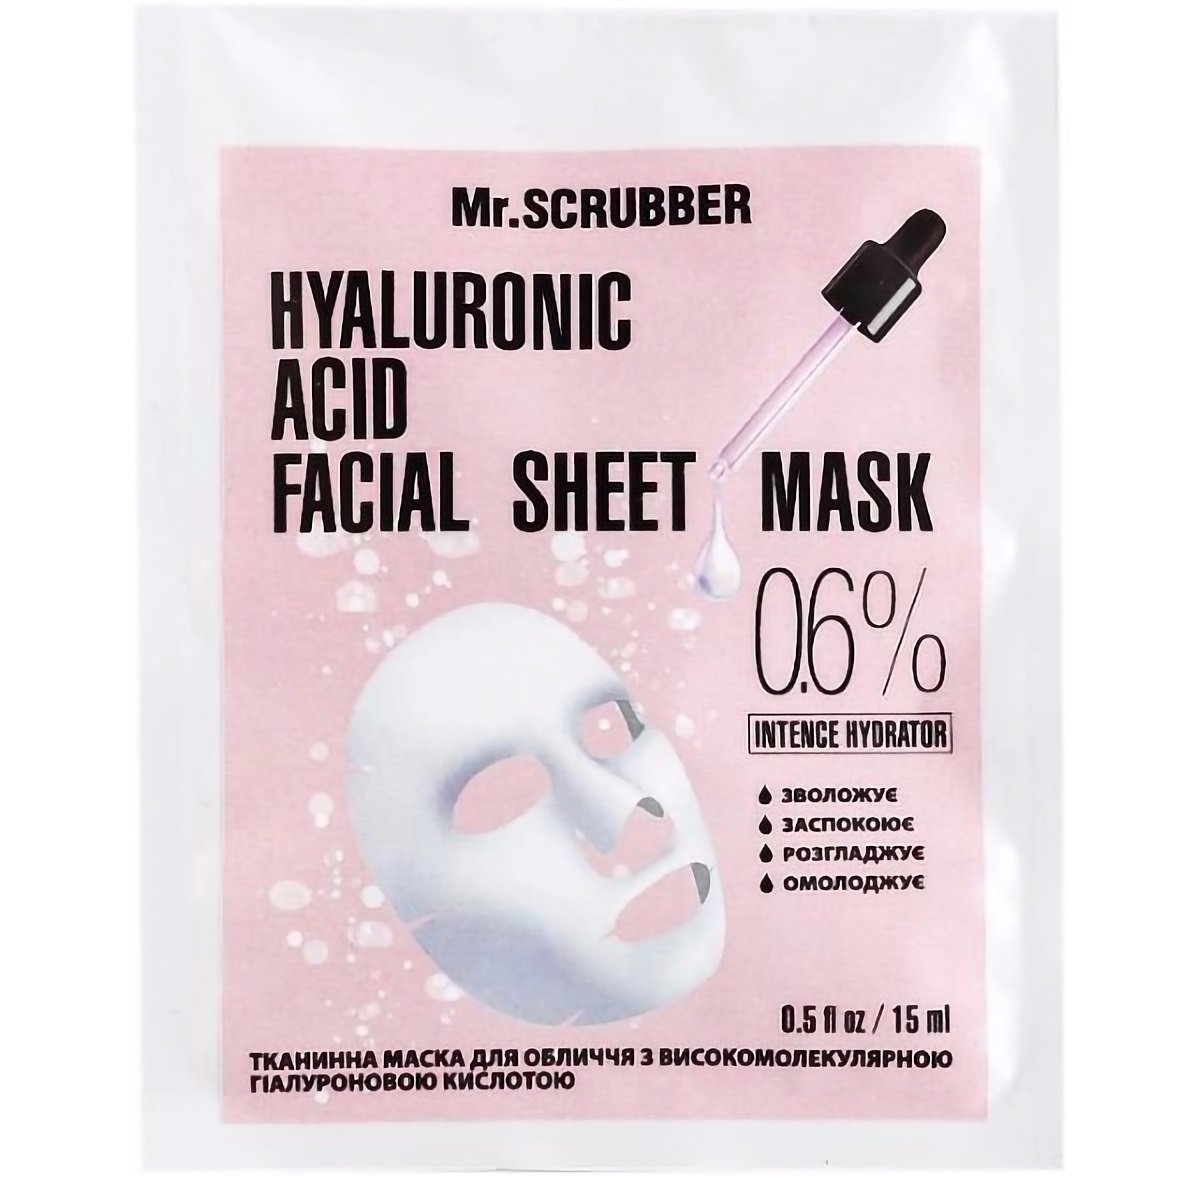 Тканевая маска Mr.Scrubber с высокомолекулярной гиалуроновой кислотой Hyaluronic Acid Facial Sheet Mask, 0,6%, 15 мл - фото 1